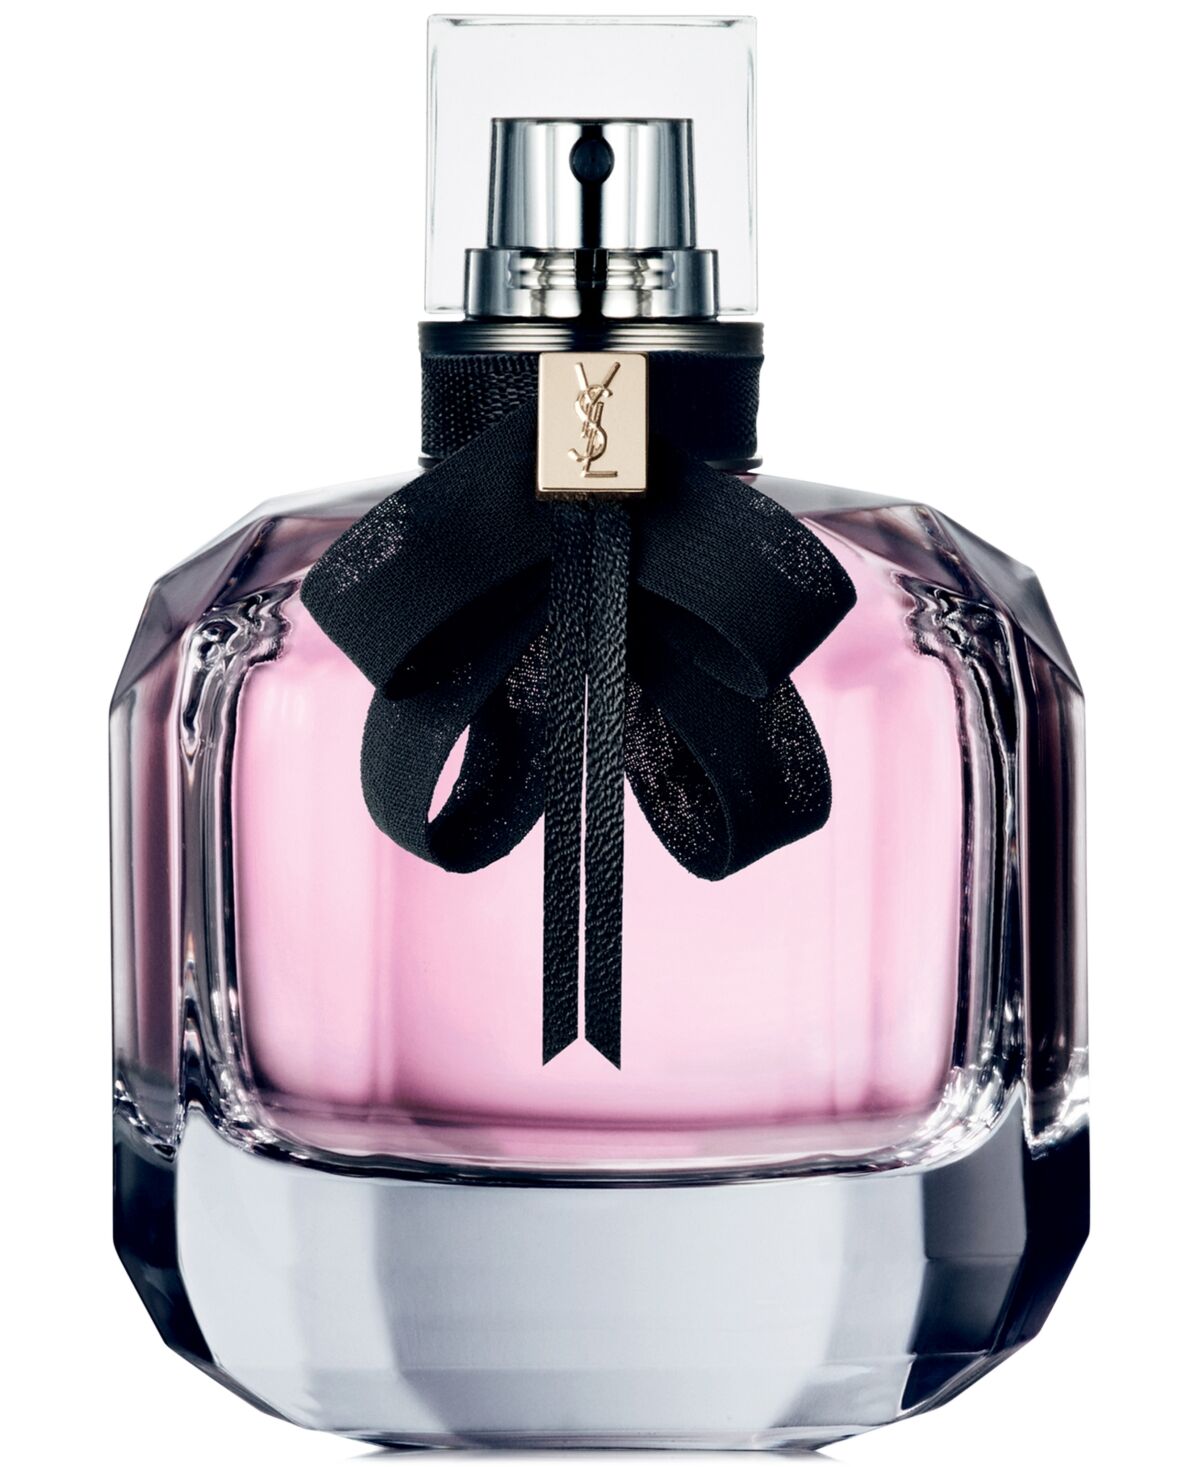 Yves Saint Laurent Mon Paris Eau de Parfum Spray, 3-oz